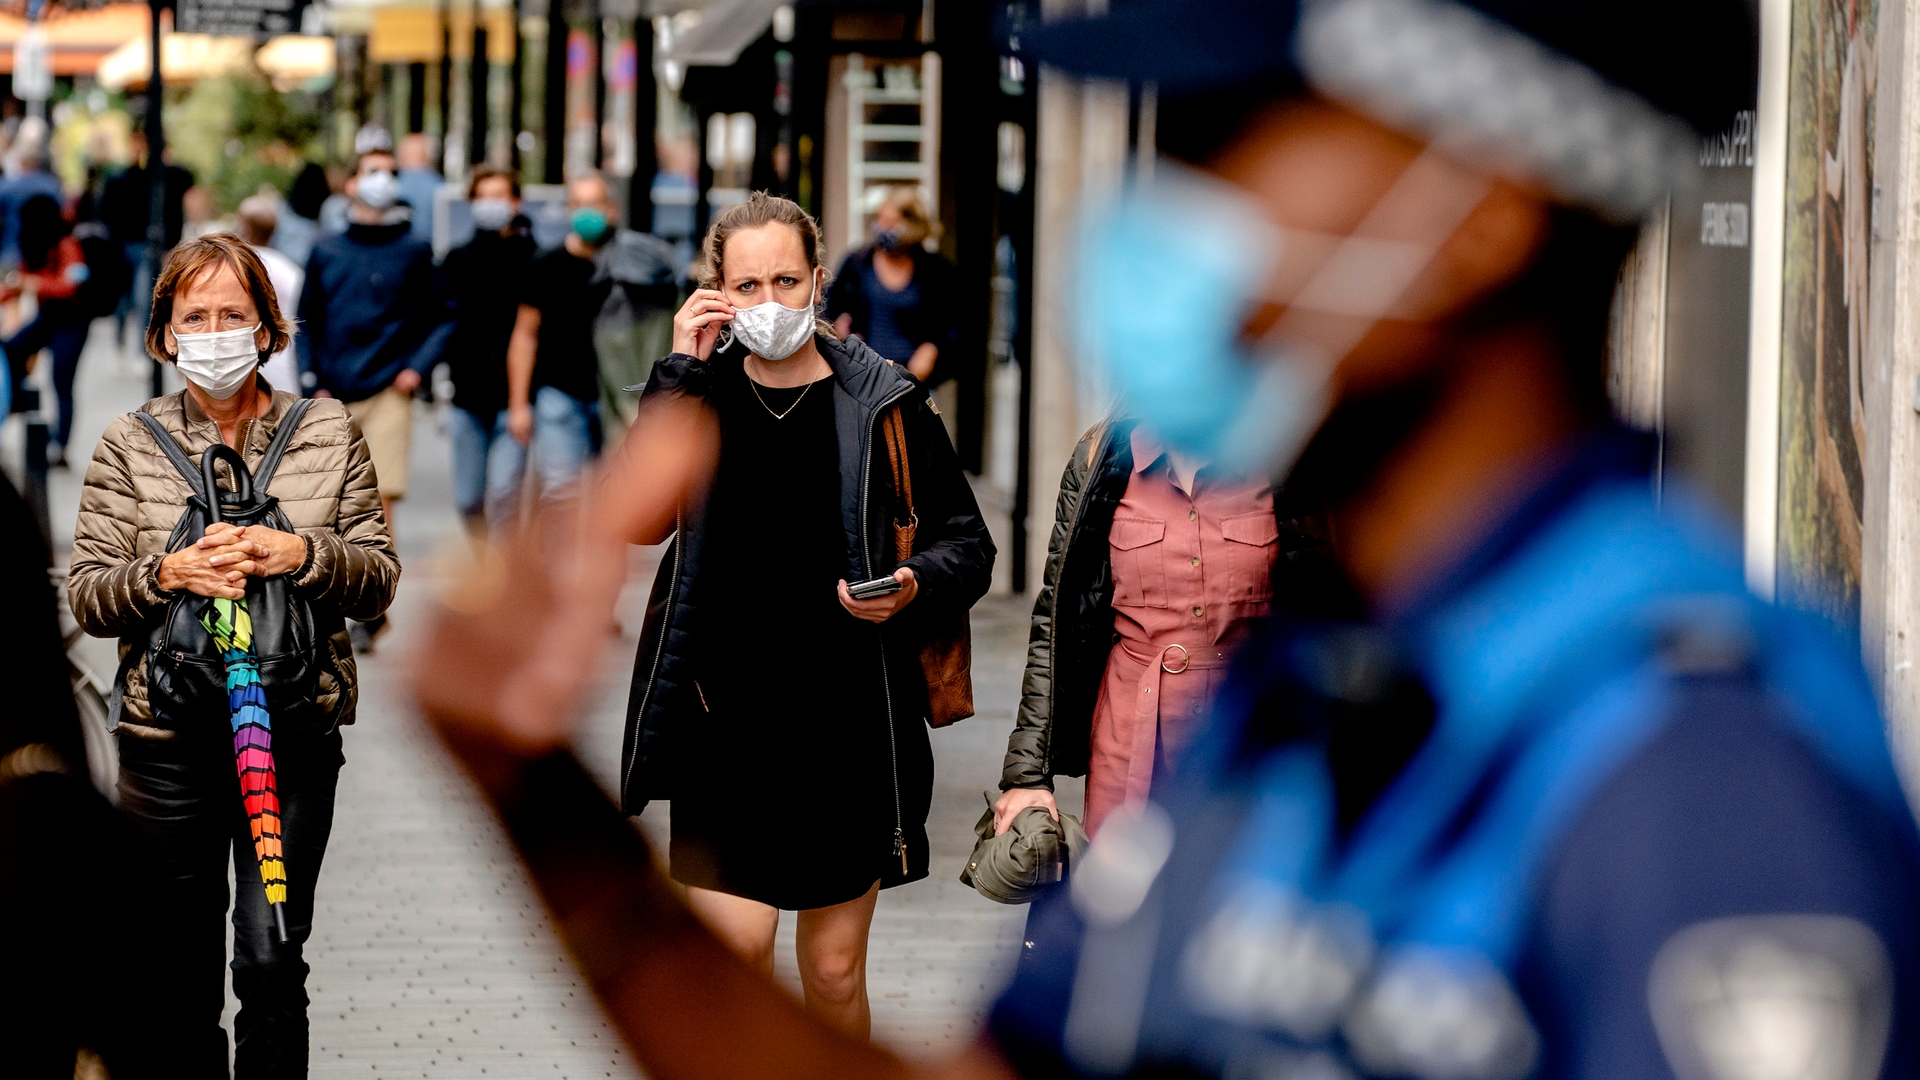 Rotterdam handhaaft dragen mondkapjes